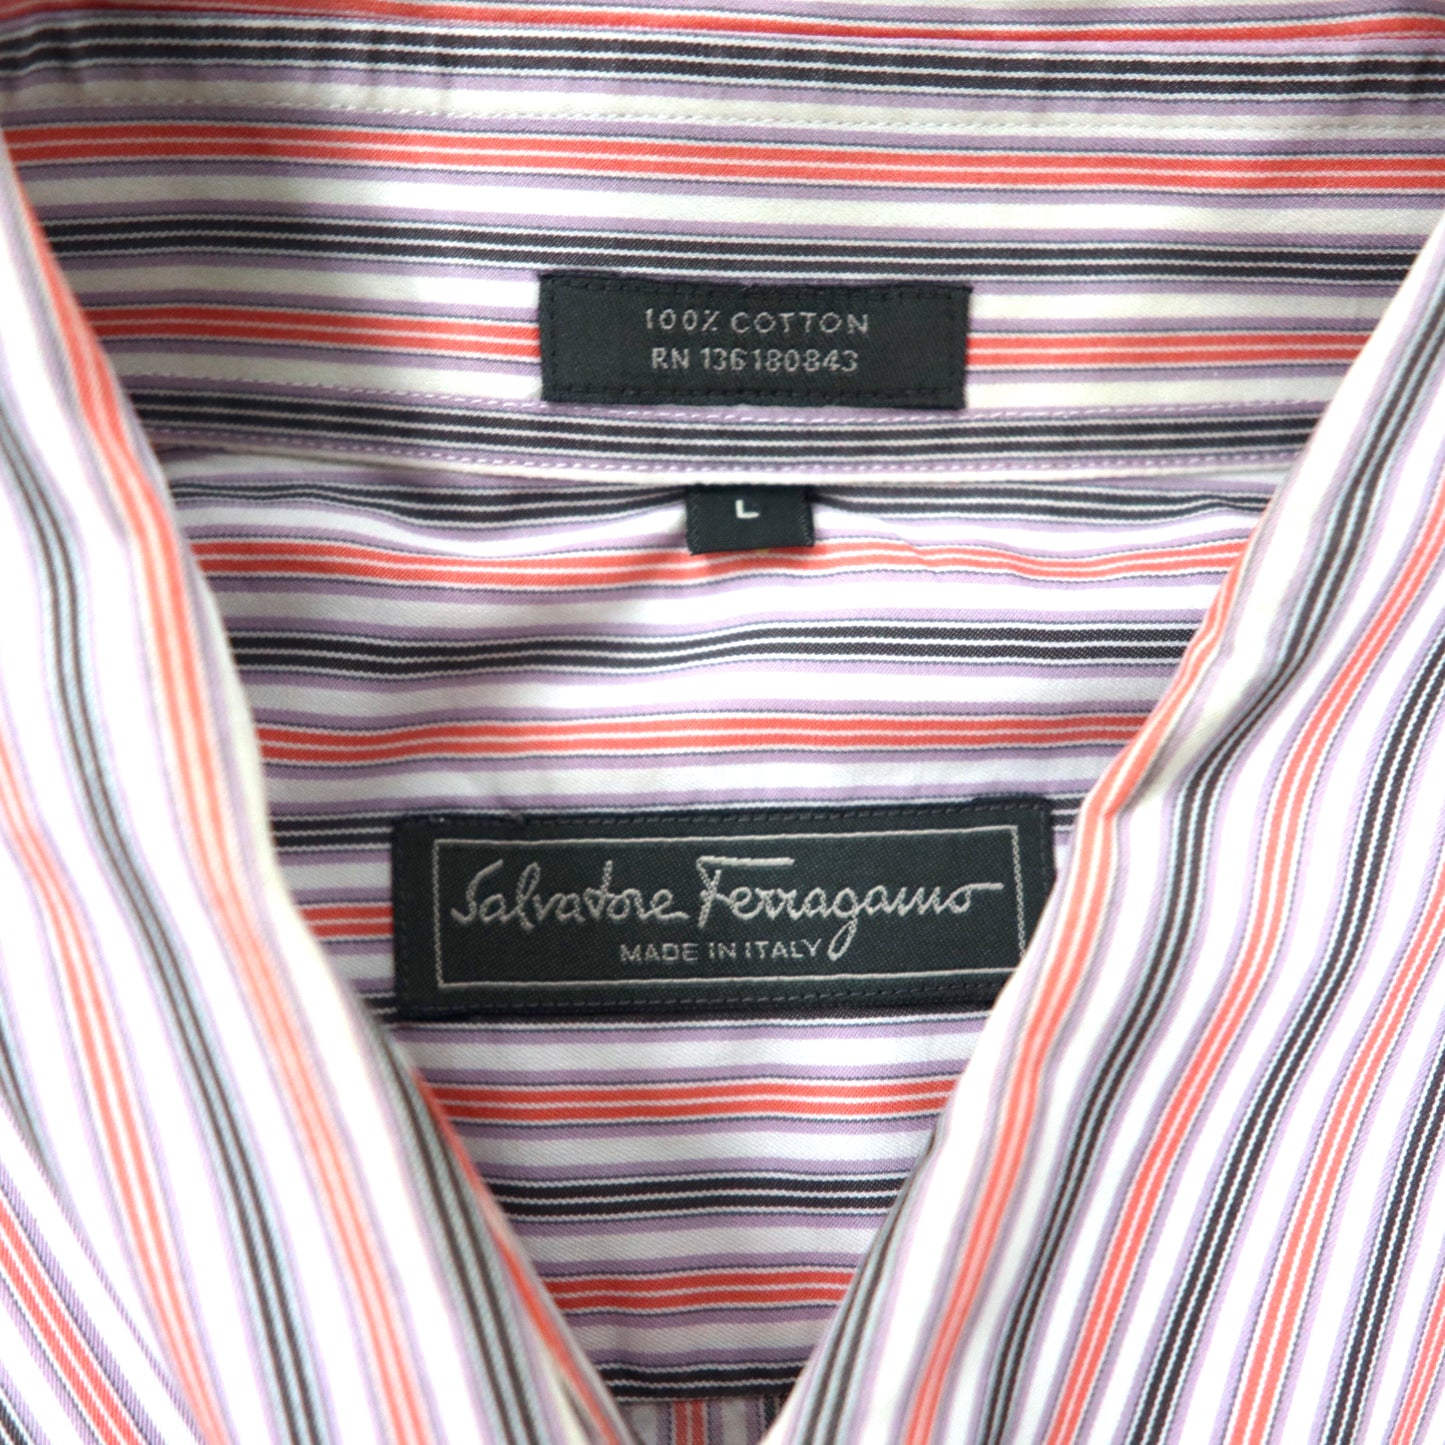 Salvatore Ferragamo ボタンダウンシャツ L マルチカラー ストライプ コットン イタリア製